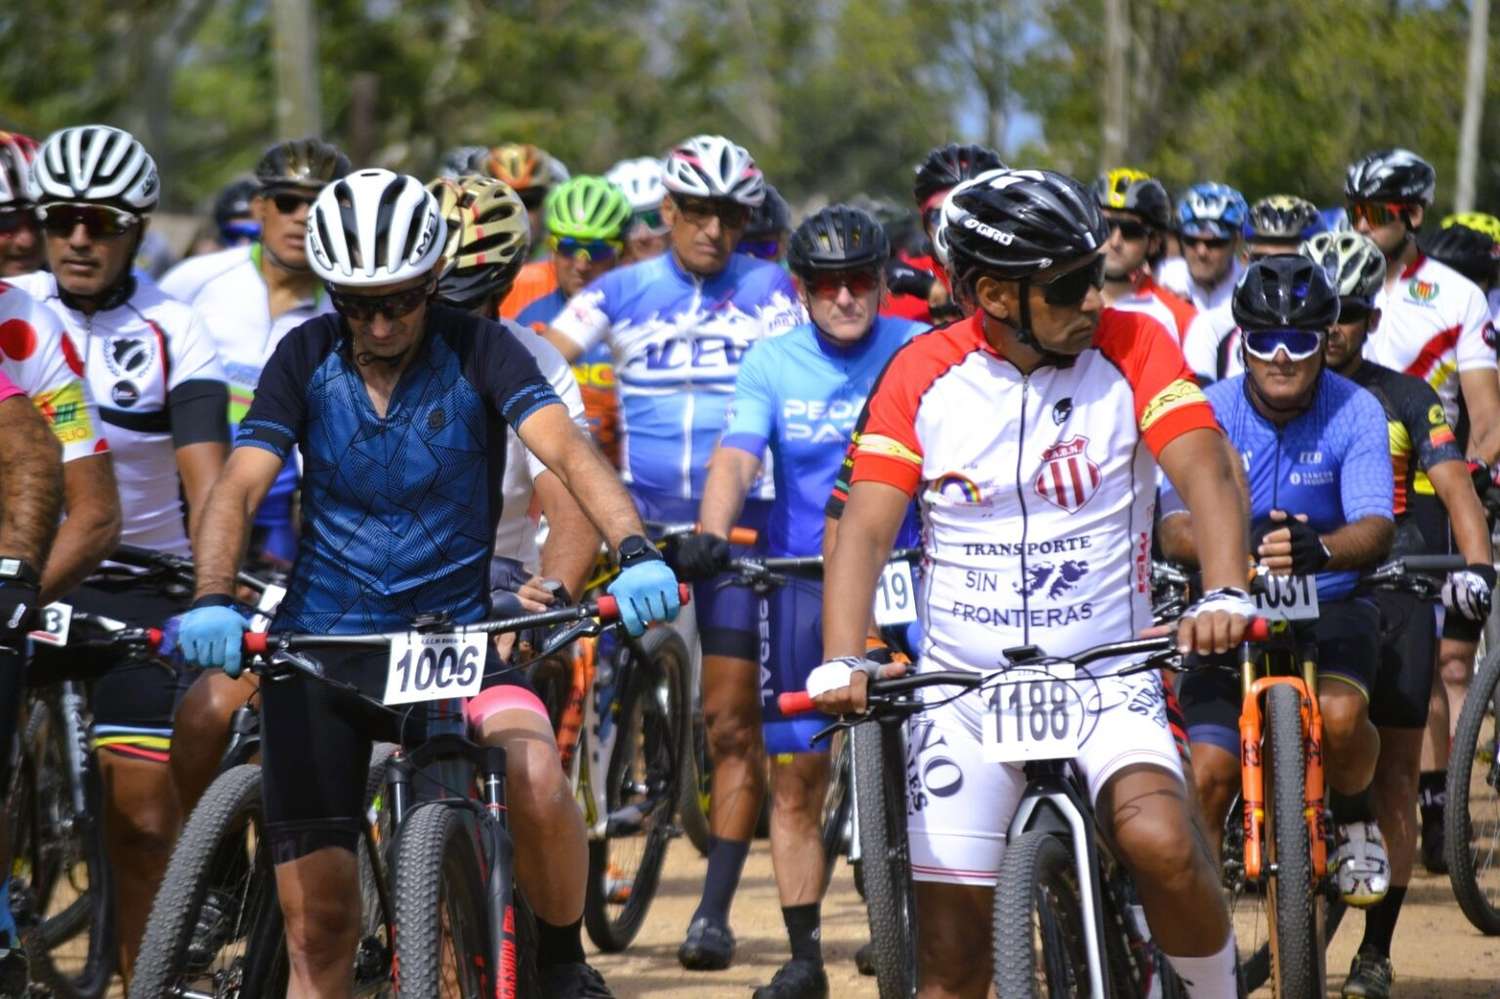 Pedalistas de distintos puntos de la provincia visitarán este fin de semana para participar de la 5a fecha del Rural Bike Entrerriano.